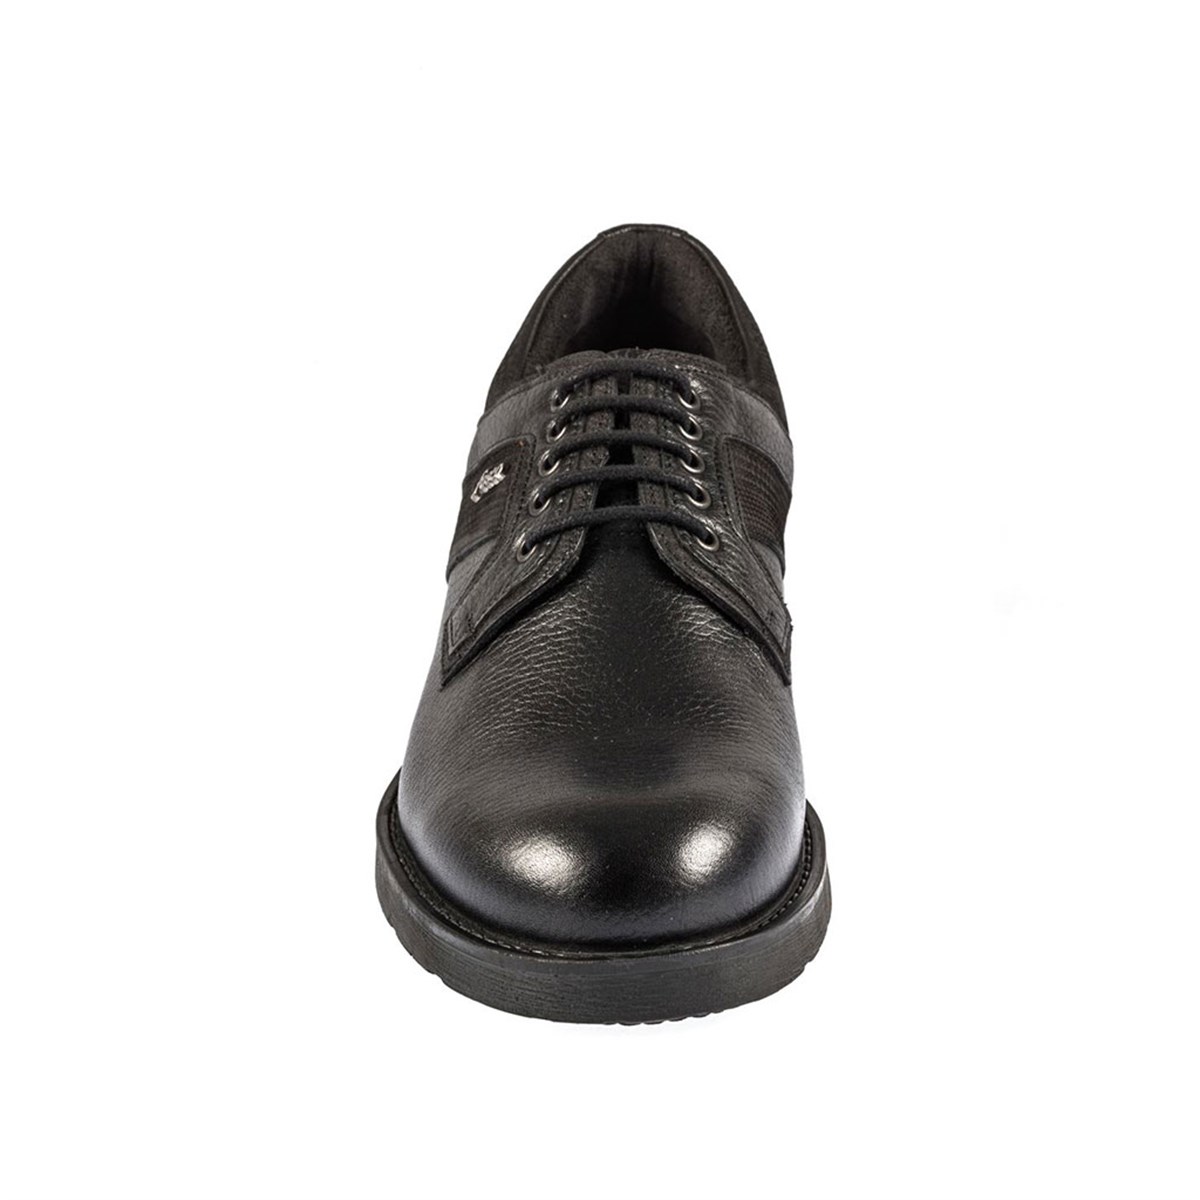 Bağcıklı Siyah Termo Taban Erkek Sıcak Astar Kışlık Ayakkabı 7576 551 820 -  Fosco